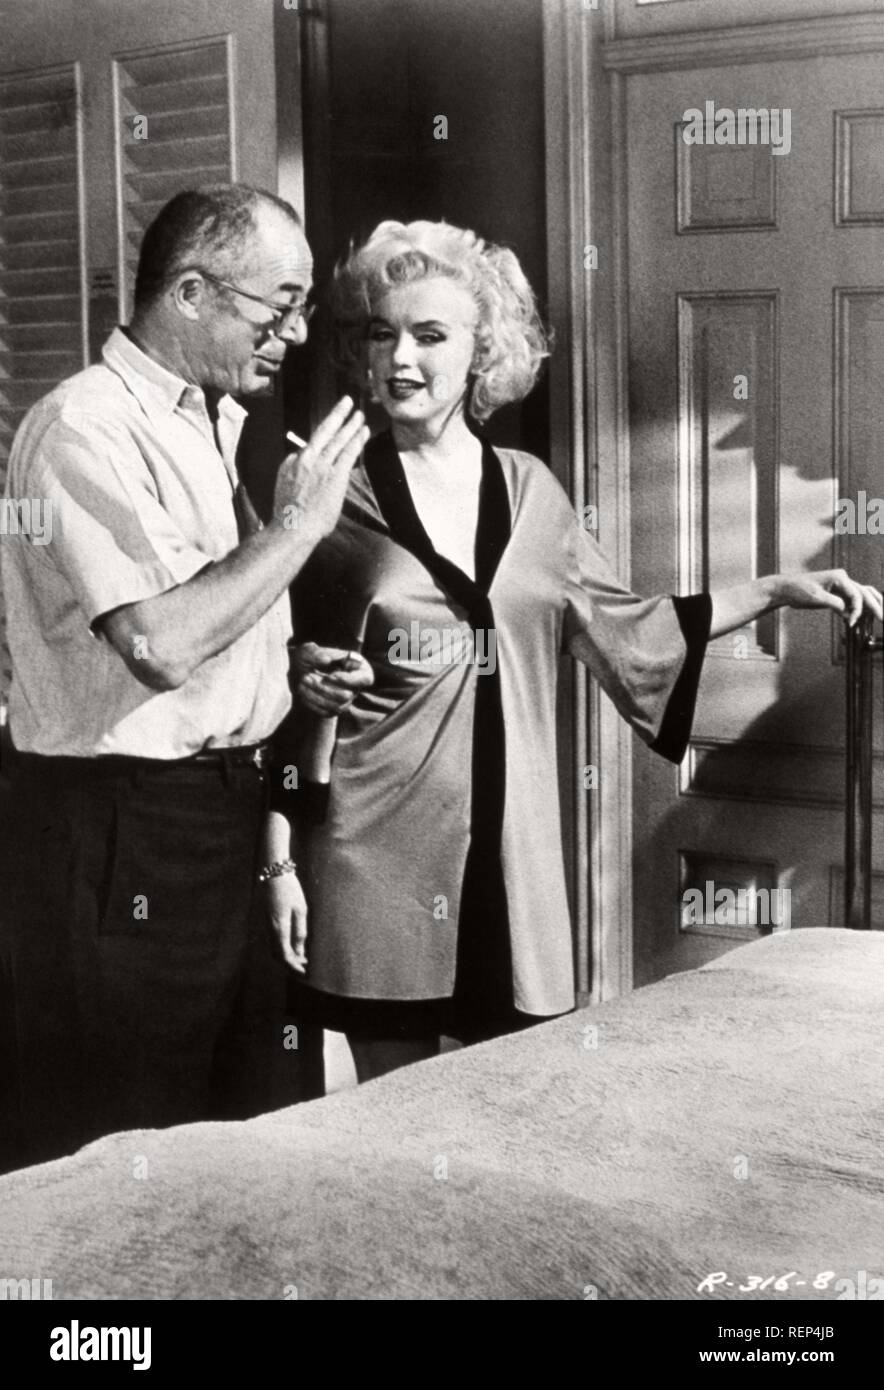 A qualcuno piace caldo Anno: 1959 USA Billy Wilder Marilyn Monroe Direttore : Billy Wilder immagine di scatto Foto Stock